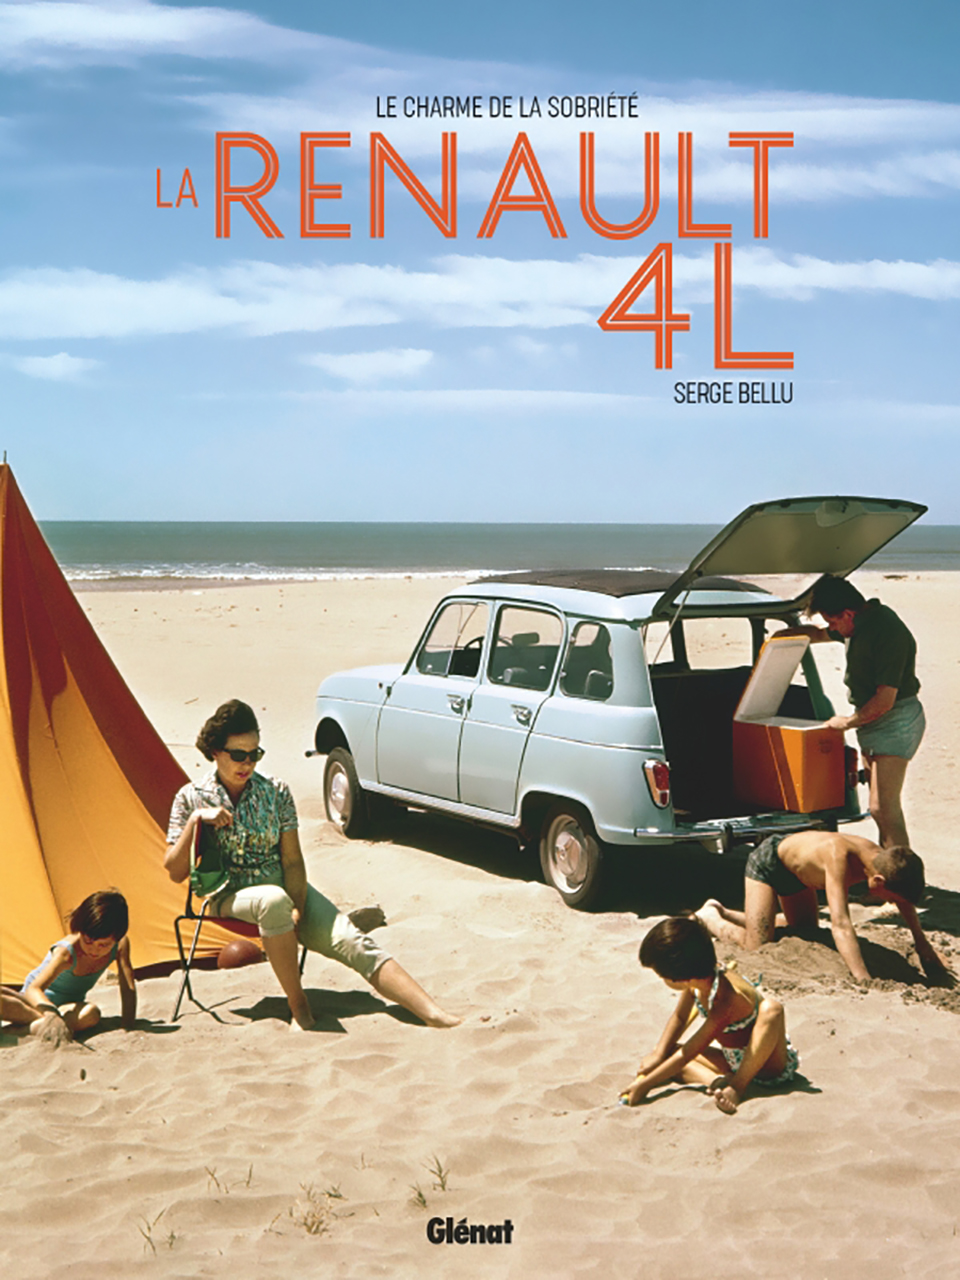 Renault 4l